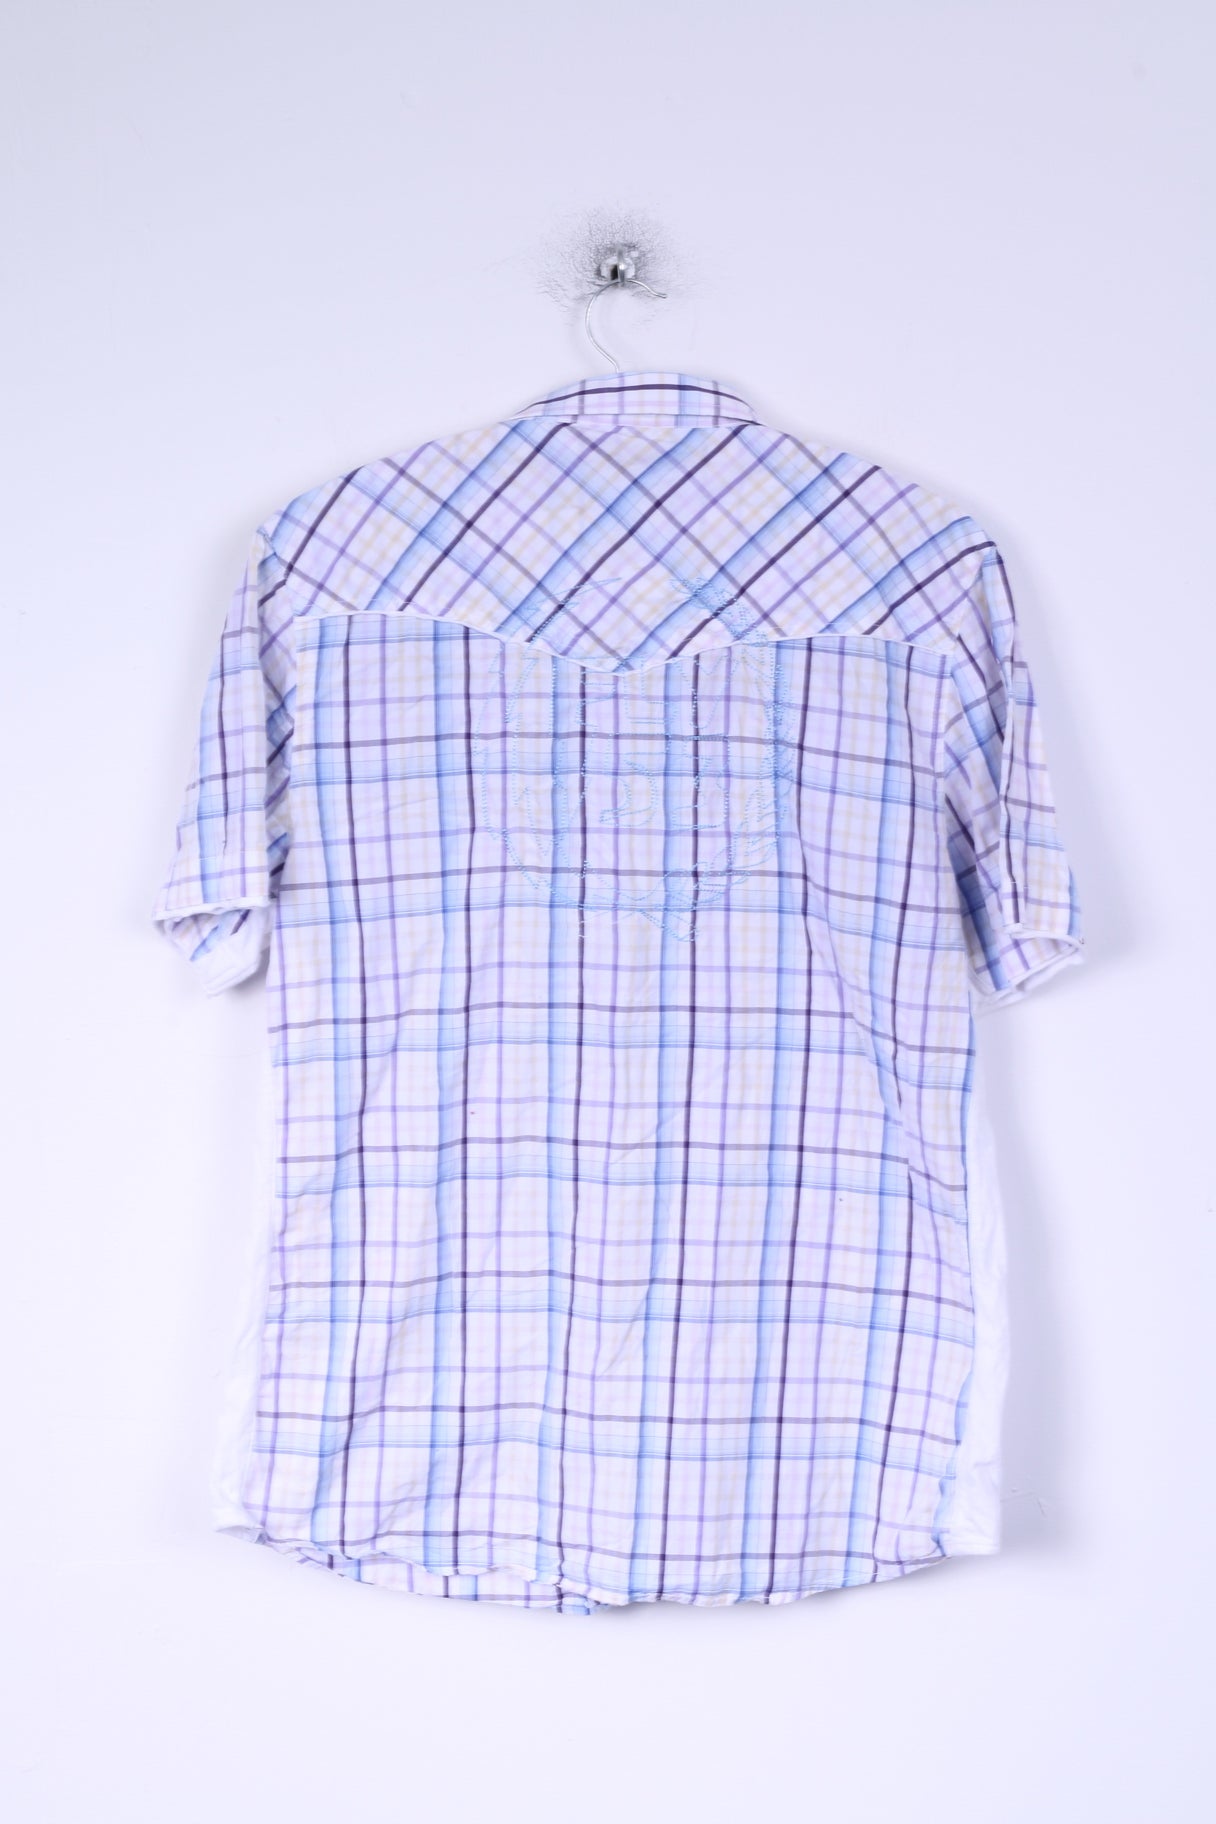 Camicia casual FLY 53 da uomo XXL (M) manica corta in cotone a quadretti bianco blu